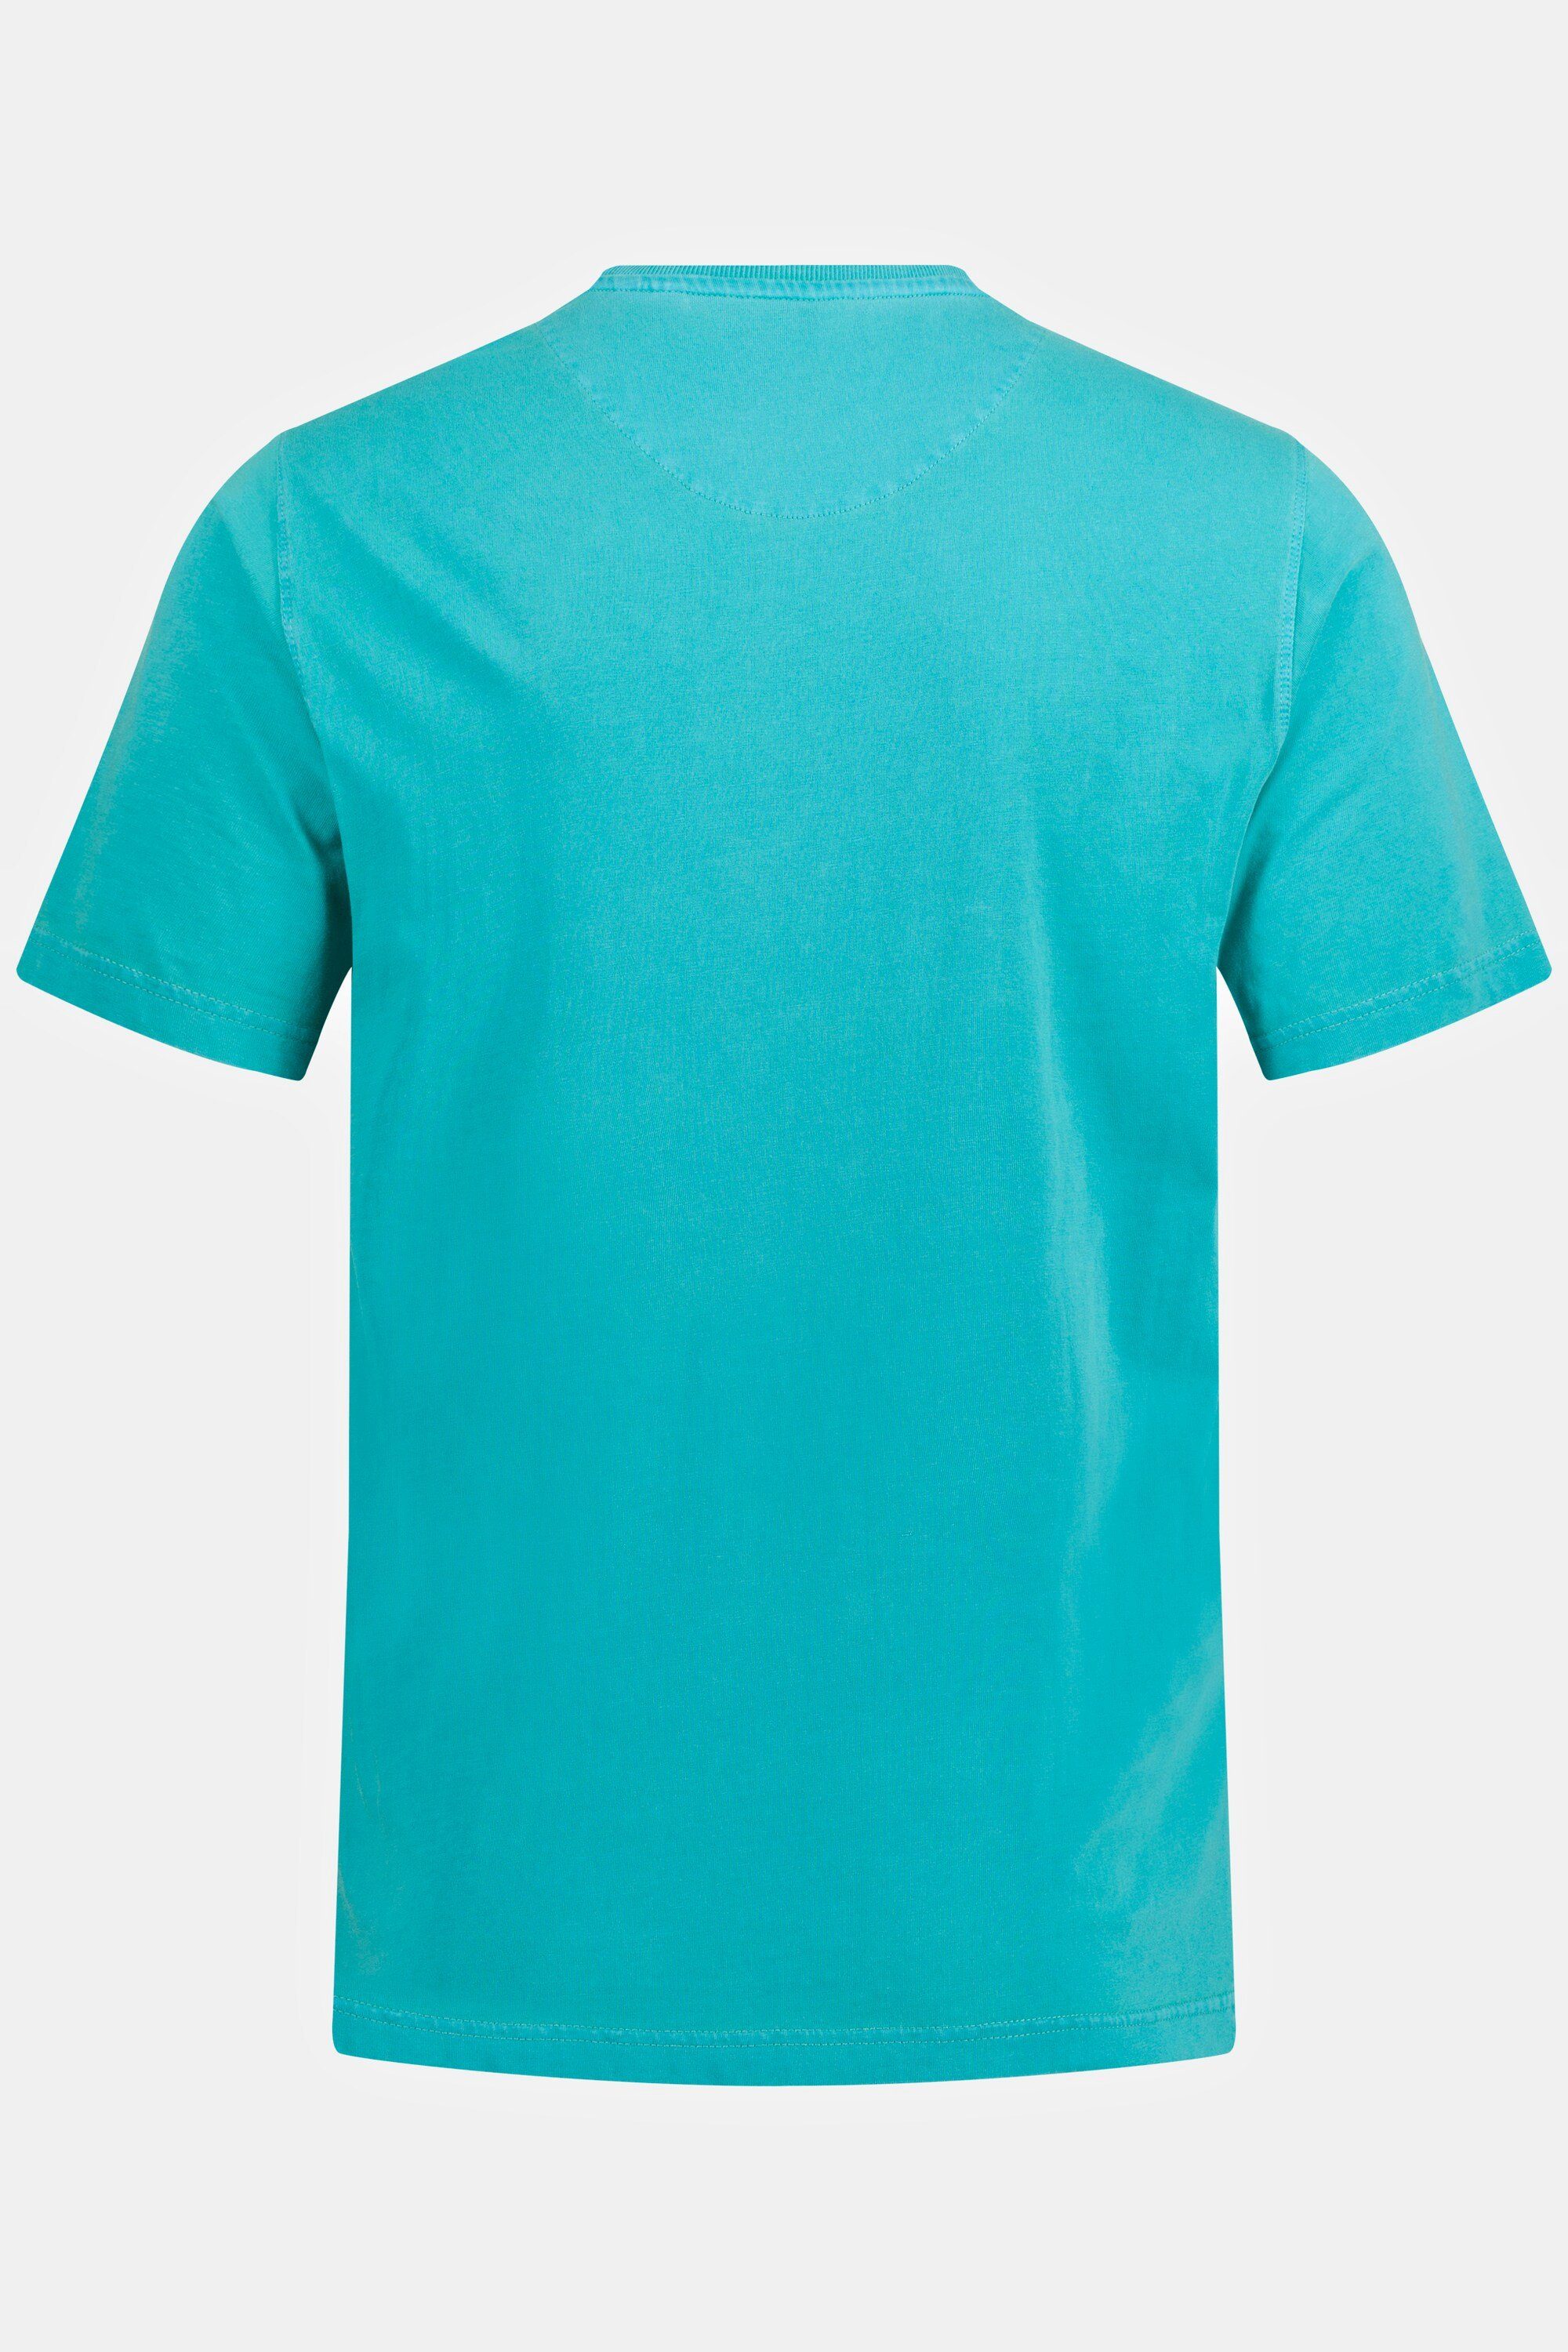 JP1880 Rundhals T-Shirt T-Shirt dunkles Halbarm türkis Brusttasche